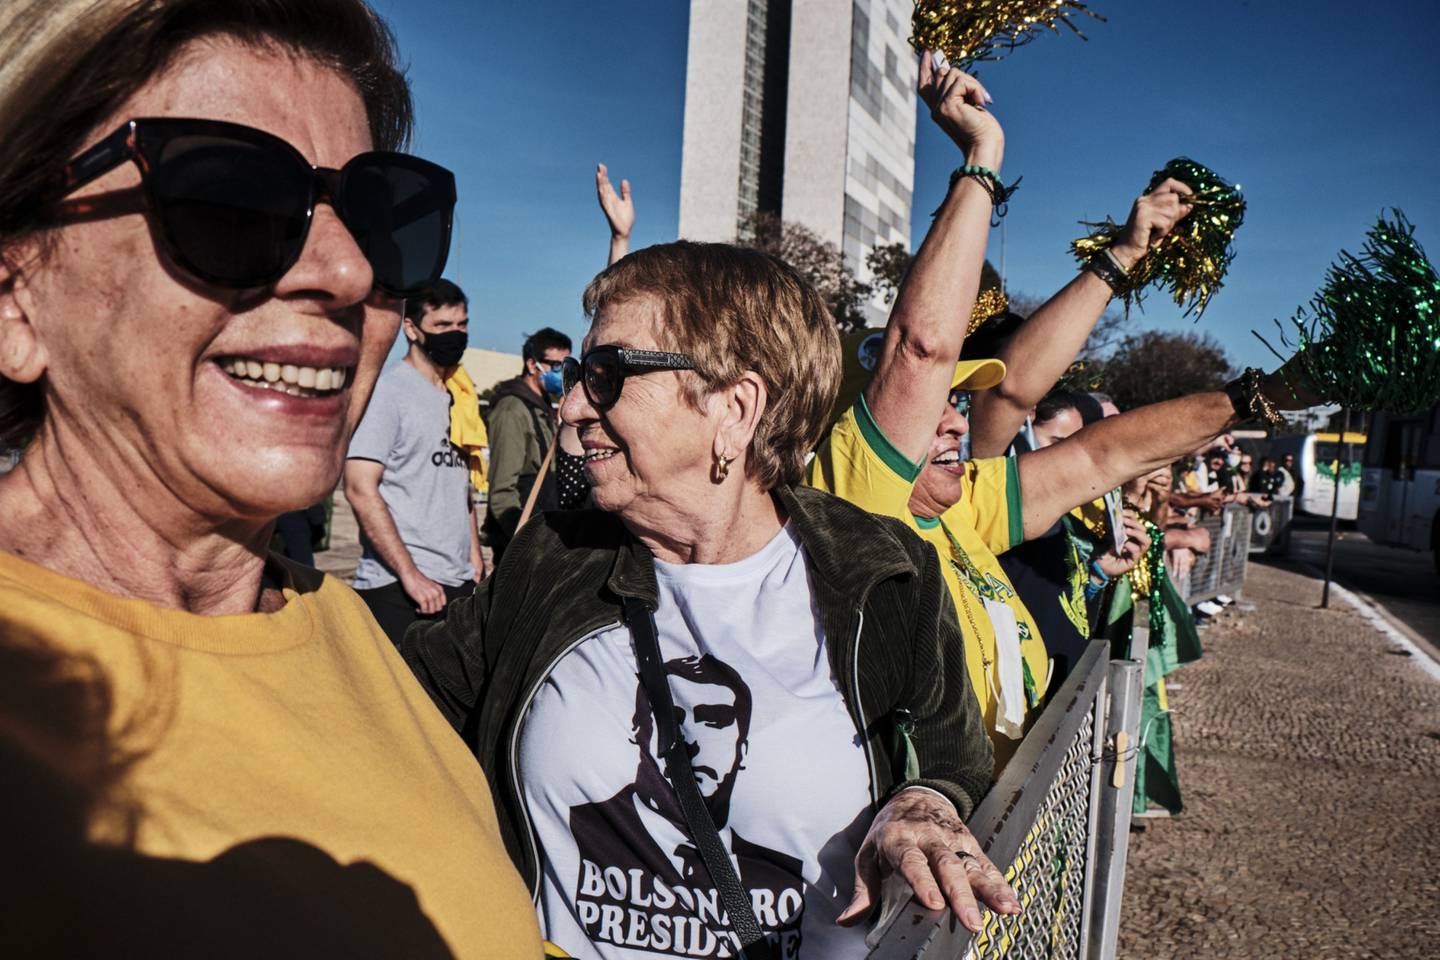 Partidarios de Jair Bolsonaro asisten a un desfile militar en Brasilia.dfd